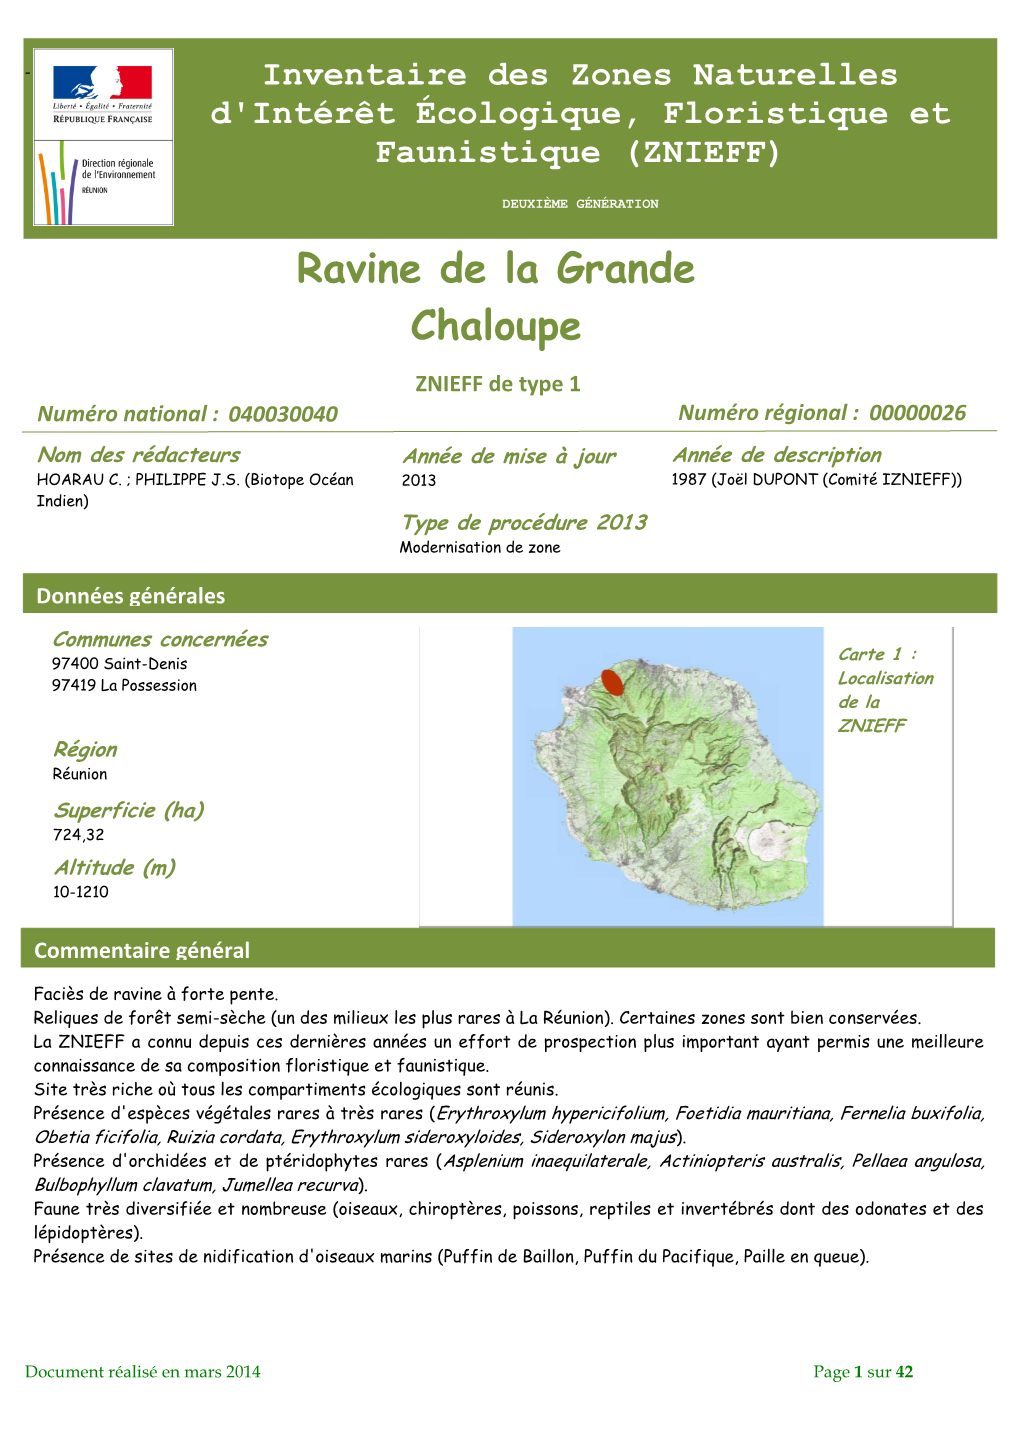 Ravine De La Grande Chaloupe ZNIEFF De Type 1 Numéro National : 040030040 Numéro Régional : 00000026